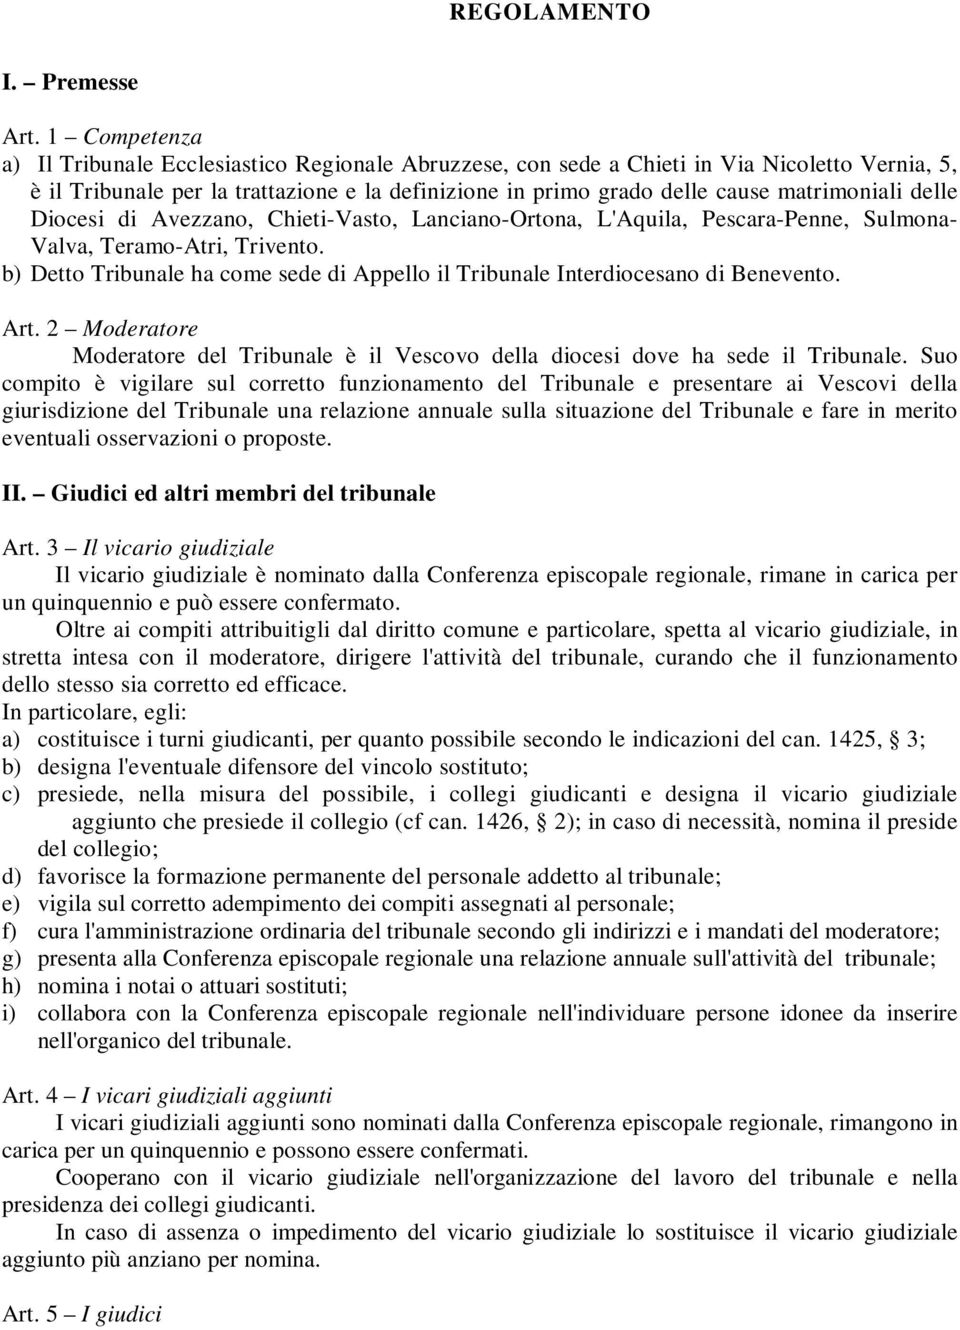 matrimoniali delle Diocesi di Avezzano, Chieti-Vasto, Lanciano-Ortona, L'Aquila, Pescara-Penne, Sulmona- Valva, Teramo-Atri, Trivento.